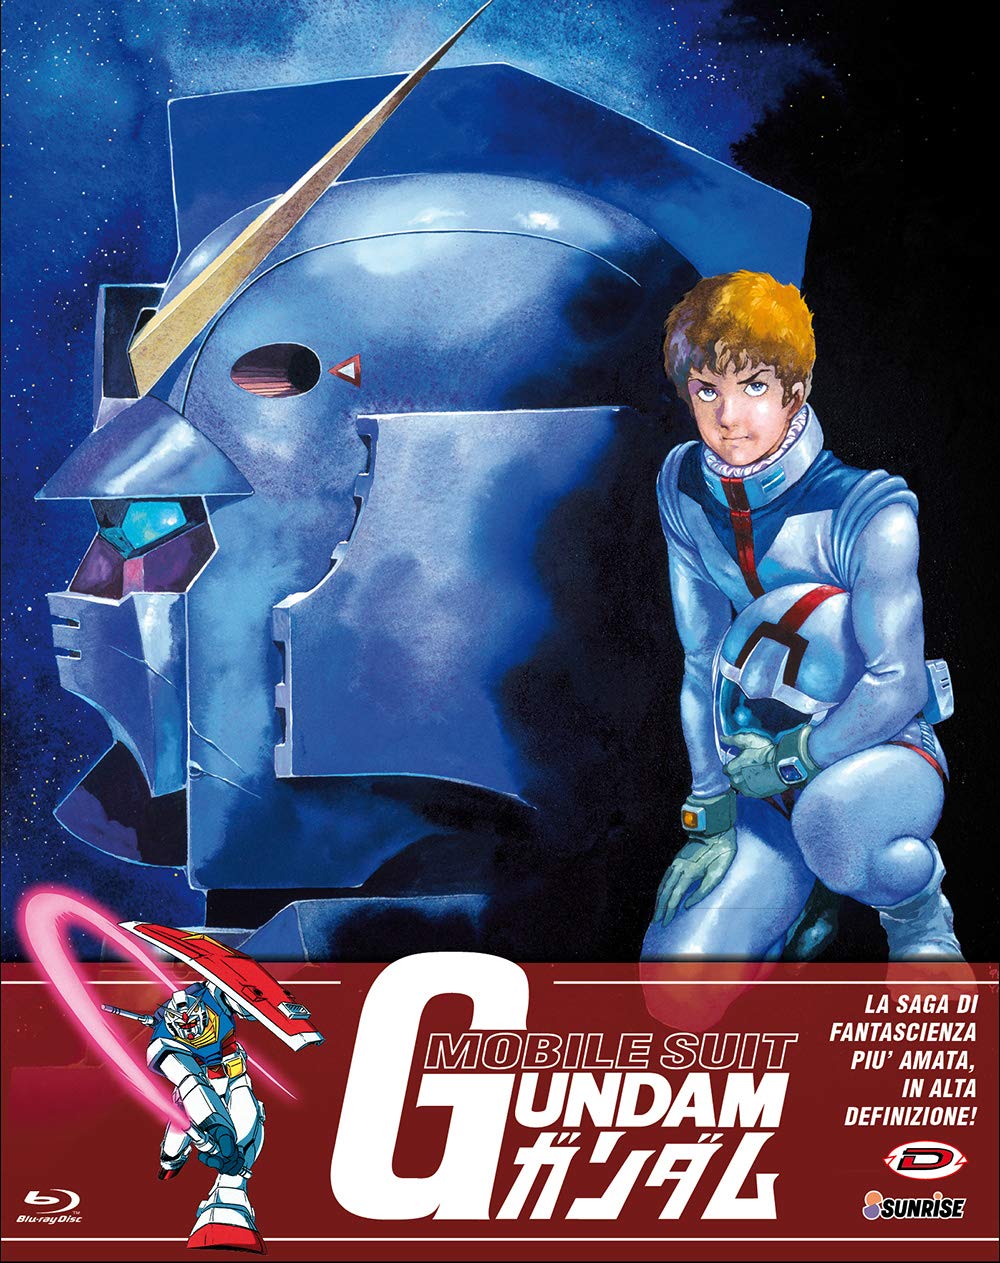 Mobile suite Gundam 0079 RX-78 Serie TV